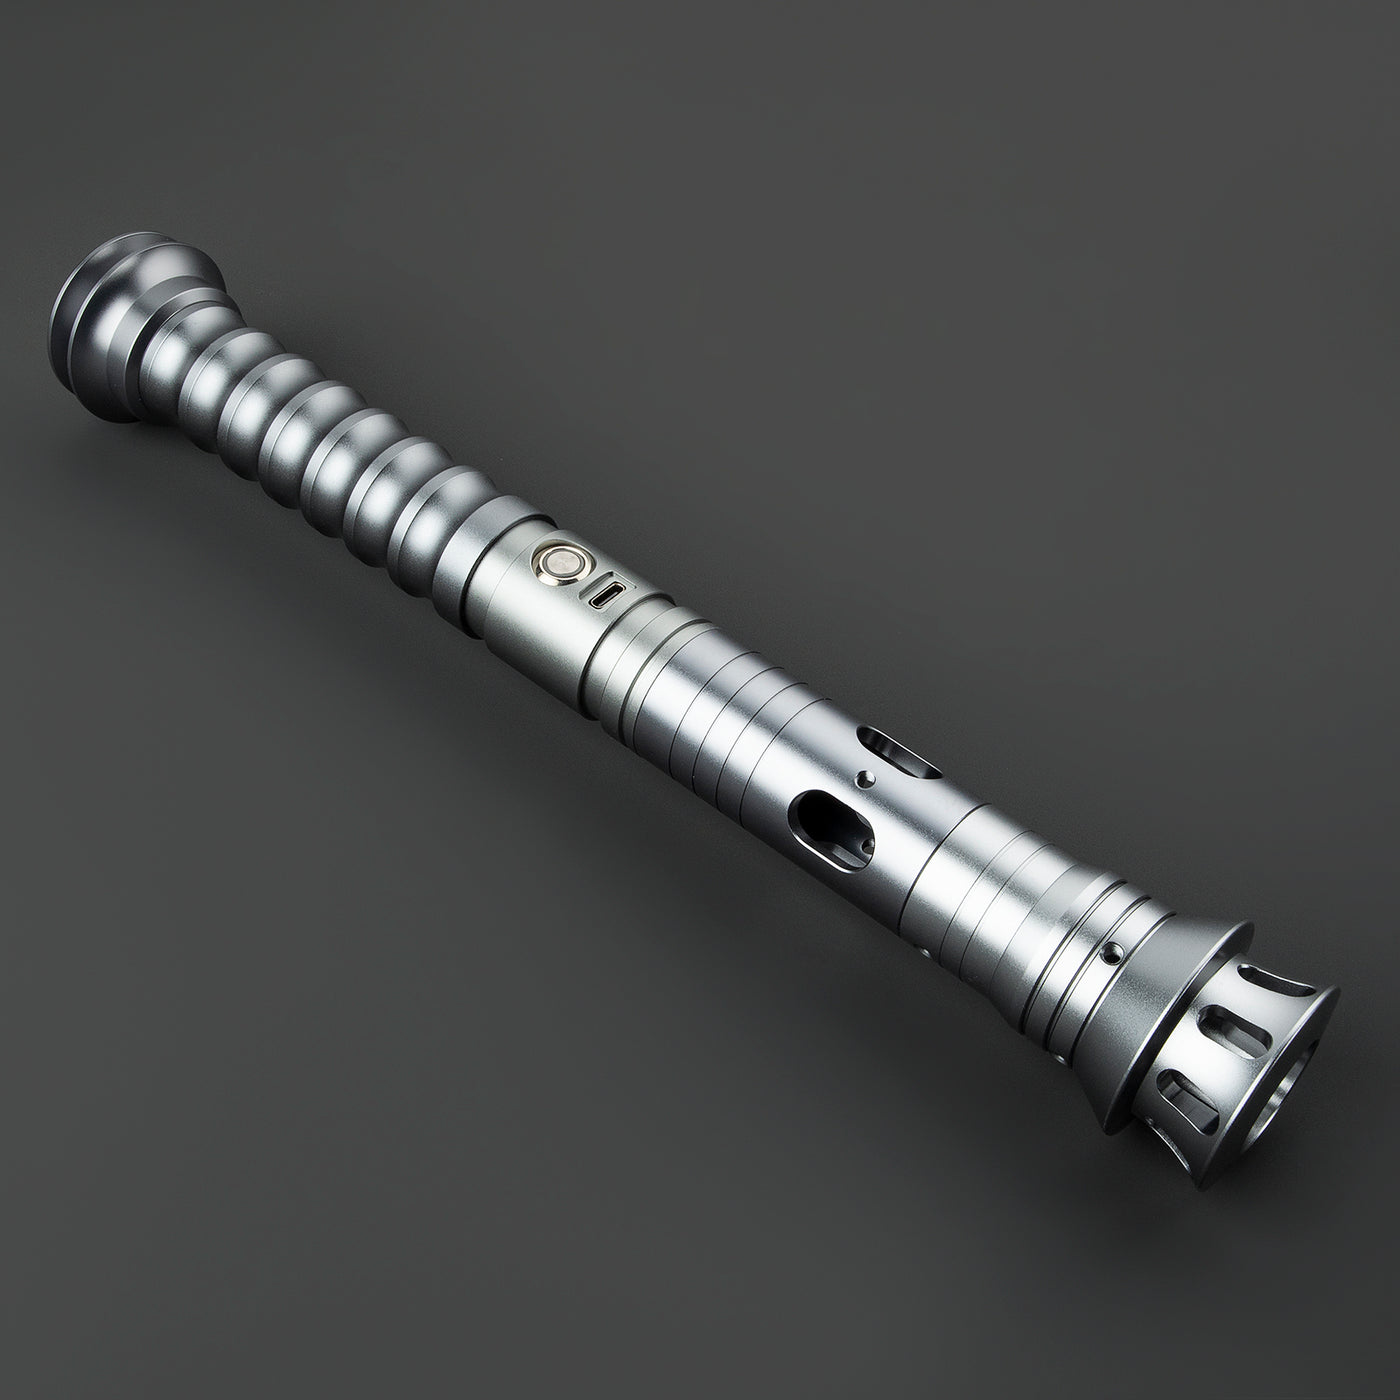 Lunar - KenJo Sabers - Star Wars Lightsaber replica Jedi Sith - Best sabershop Europe - Nederland light sabers kopen -